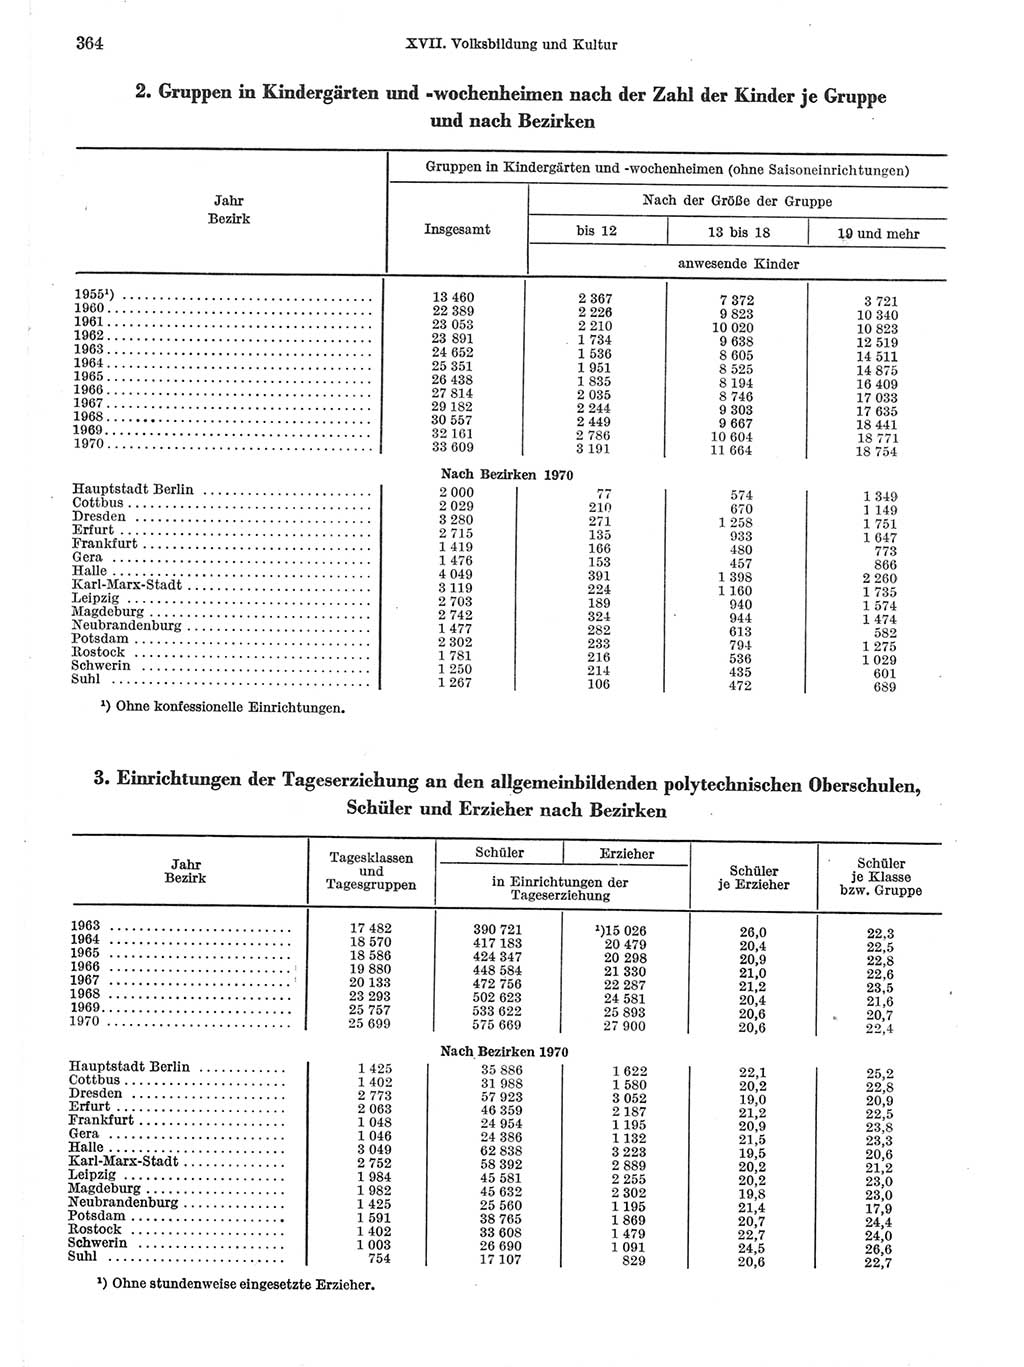 Statistisches Jahrbuch der Deutschen Demokratischen Republik (DDR) 1971, Seite 364 (Stat. Jb. DDR 1971, S. 364)